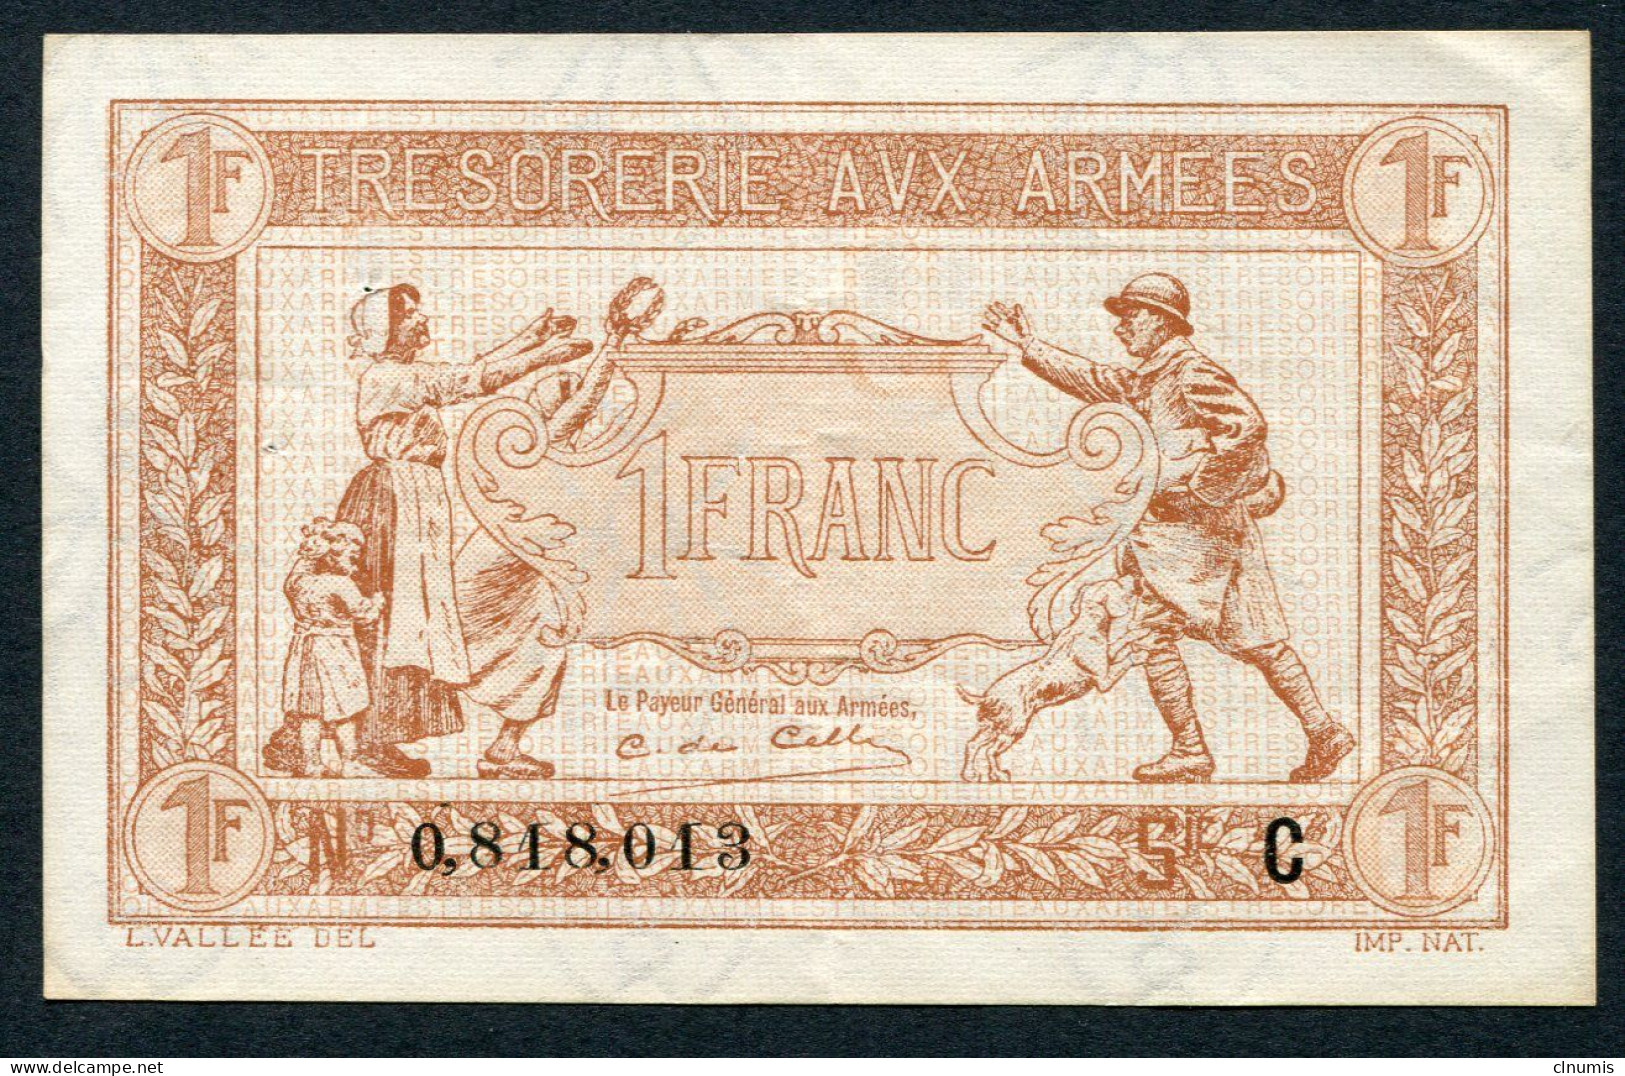 1 Franc Trésorerie Aux Armées 1917, Lettre C, N° 818013 - 1917-1919 Army Treasury